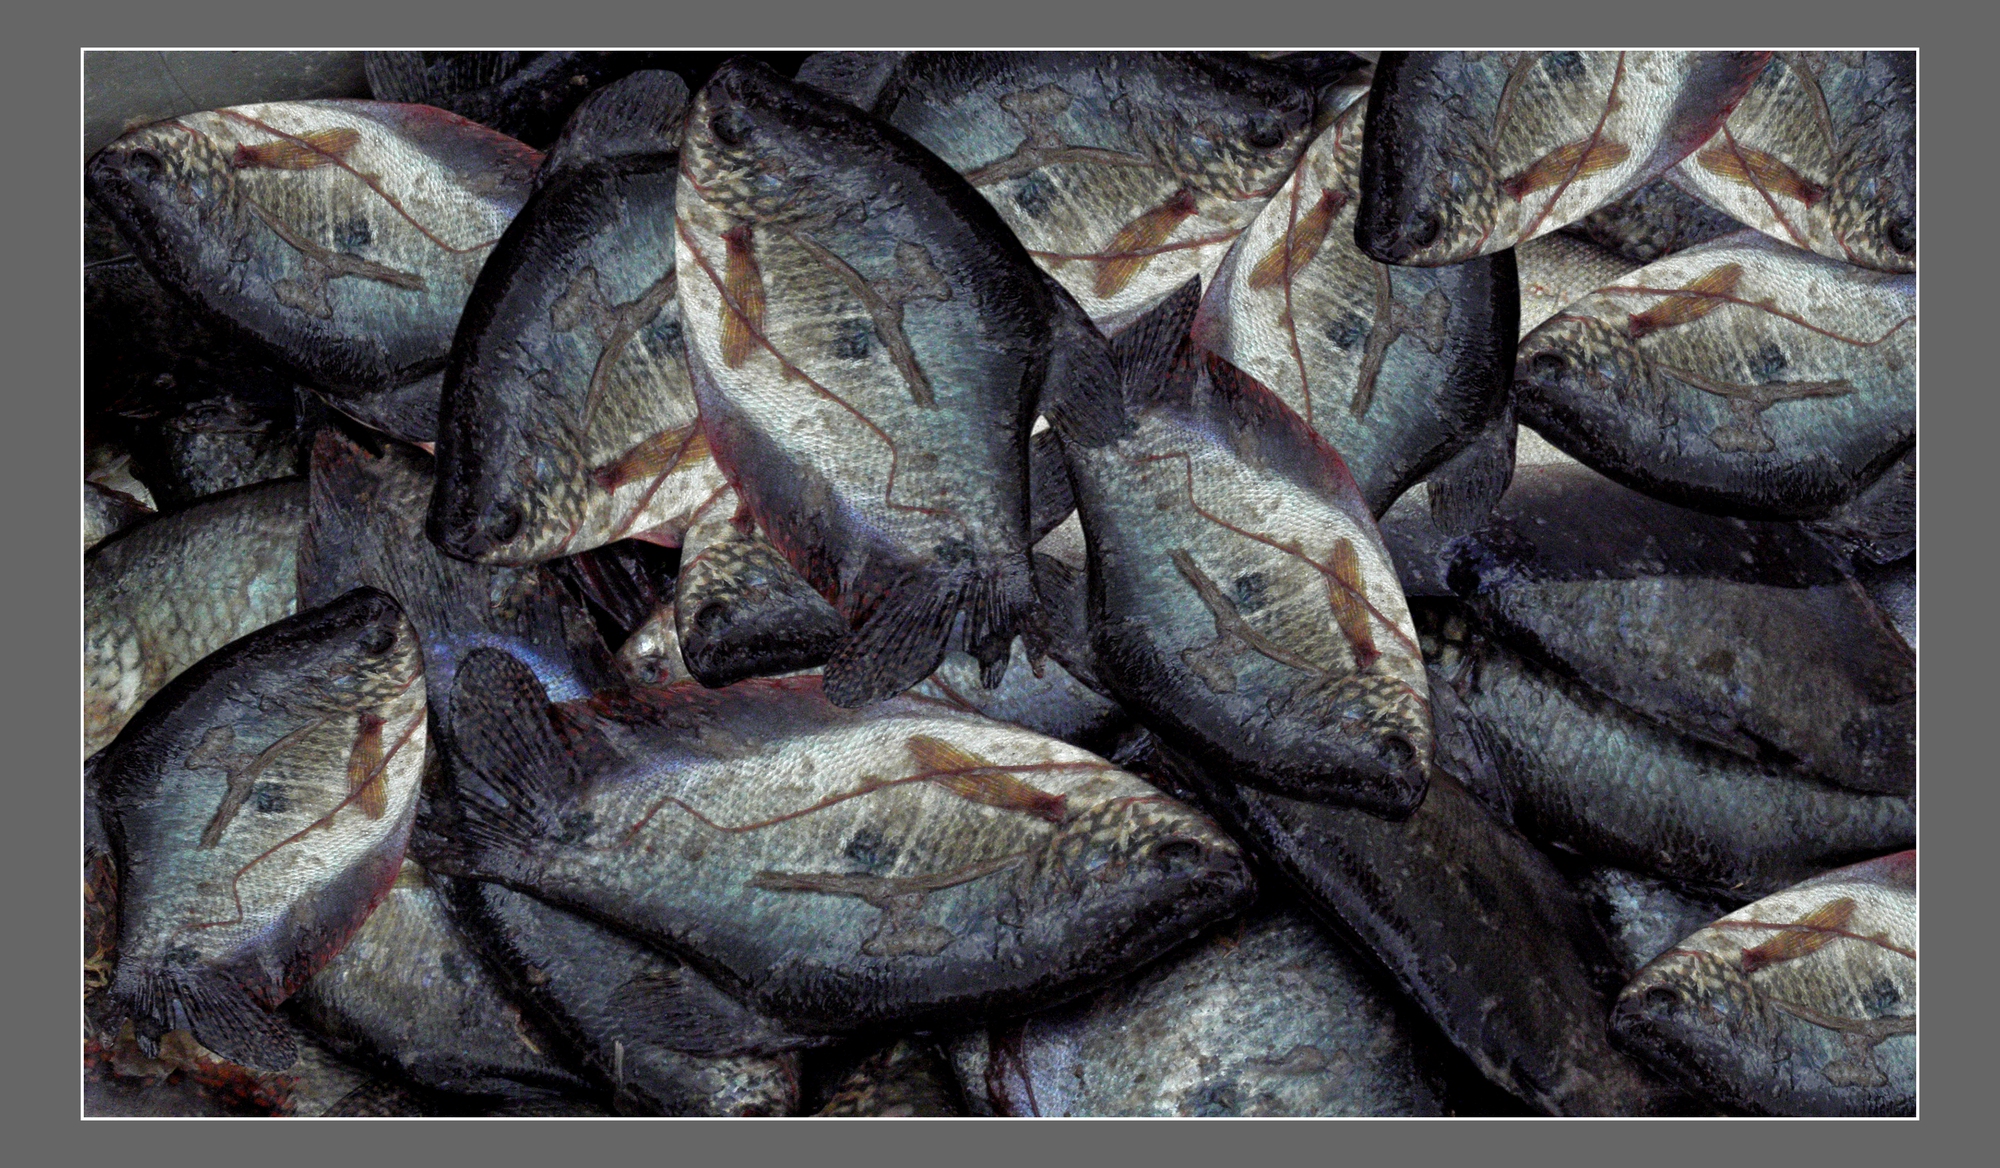 Cận cảnh loài cá đồng-cá đặc sản nổi tiếng bắt trong rừng ngập nước Cà Mau - Ảnh 5.